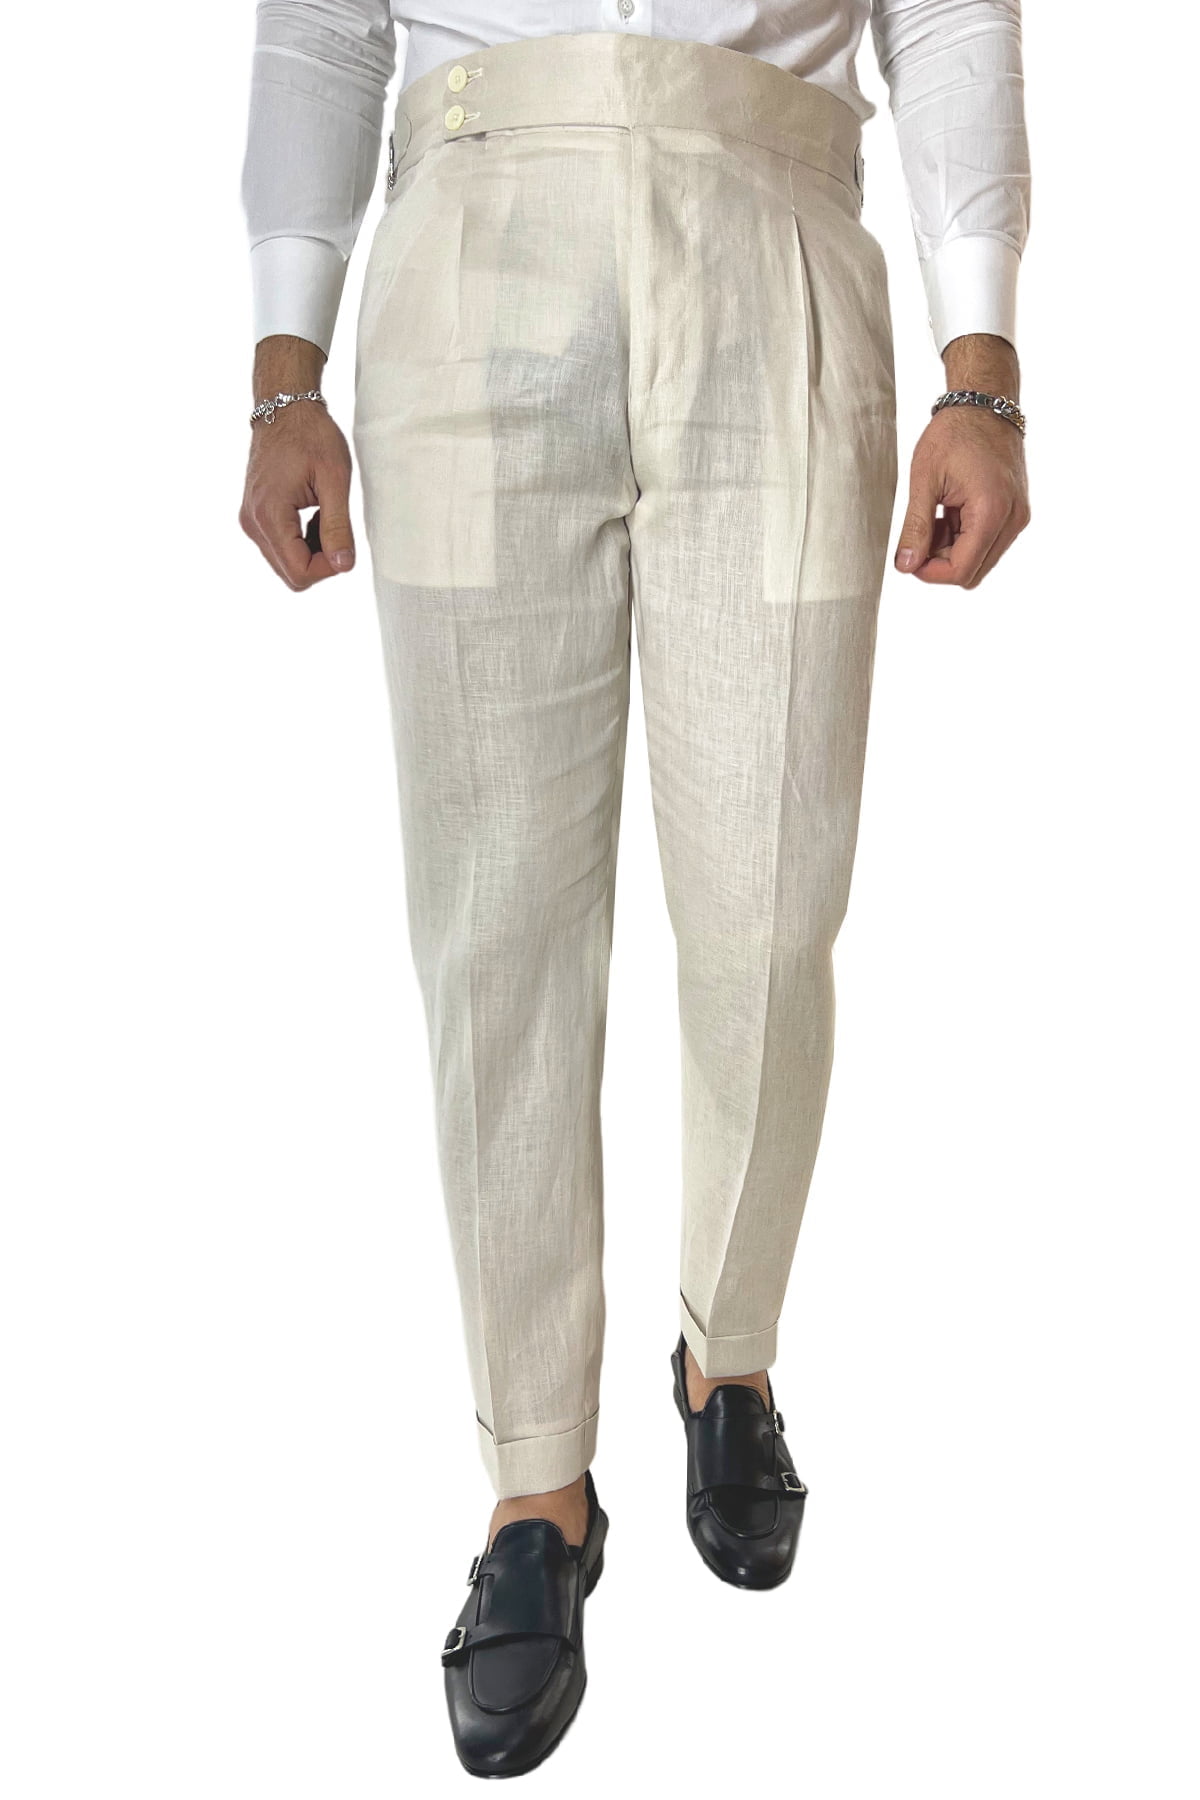 Pantalone uomo beige in lino 100% vita alta con pinces fibbie laterali e risvolto 4cm